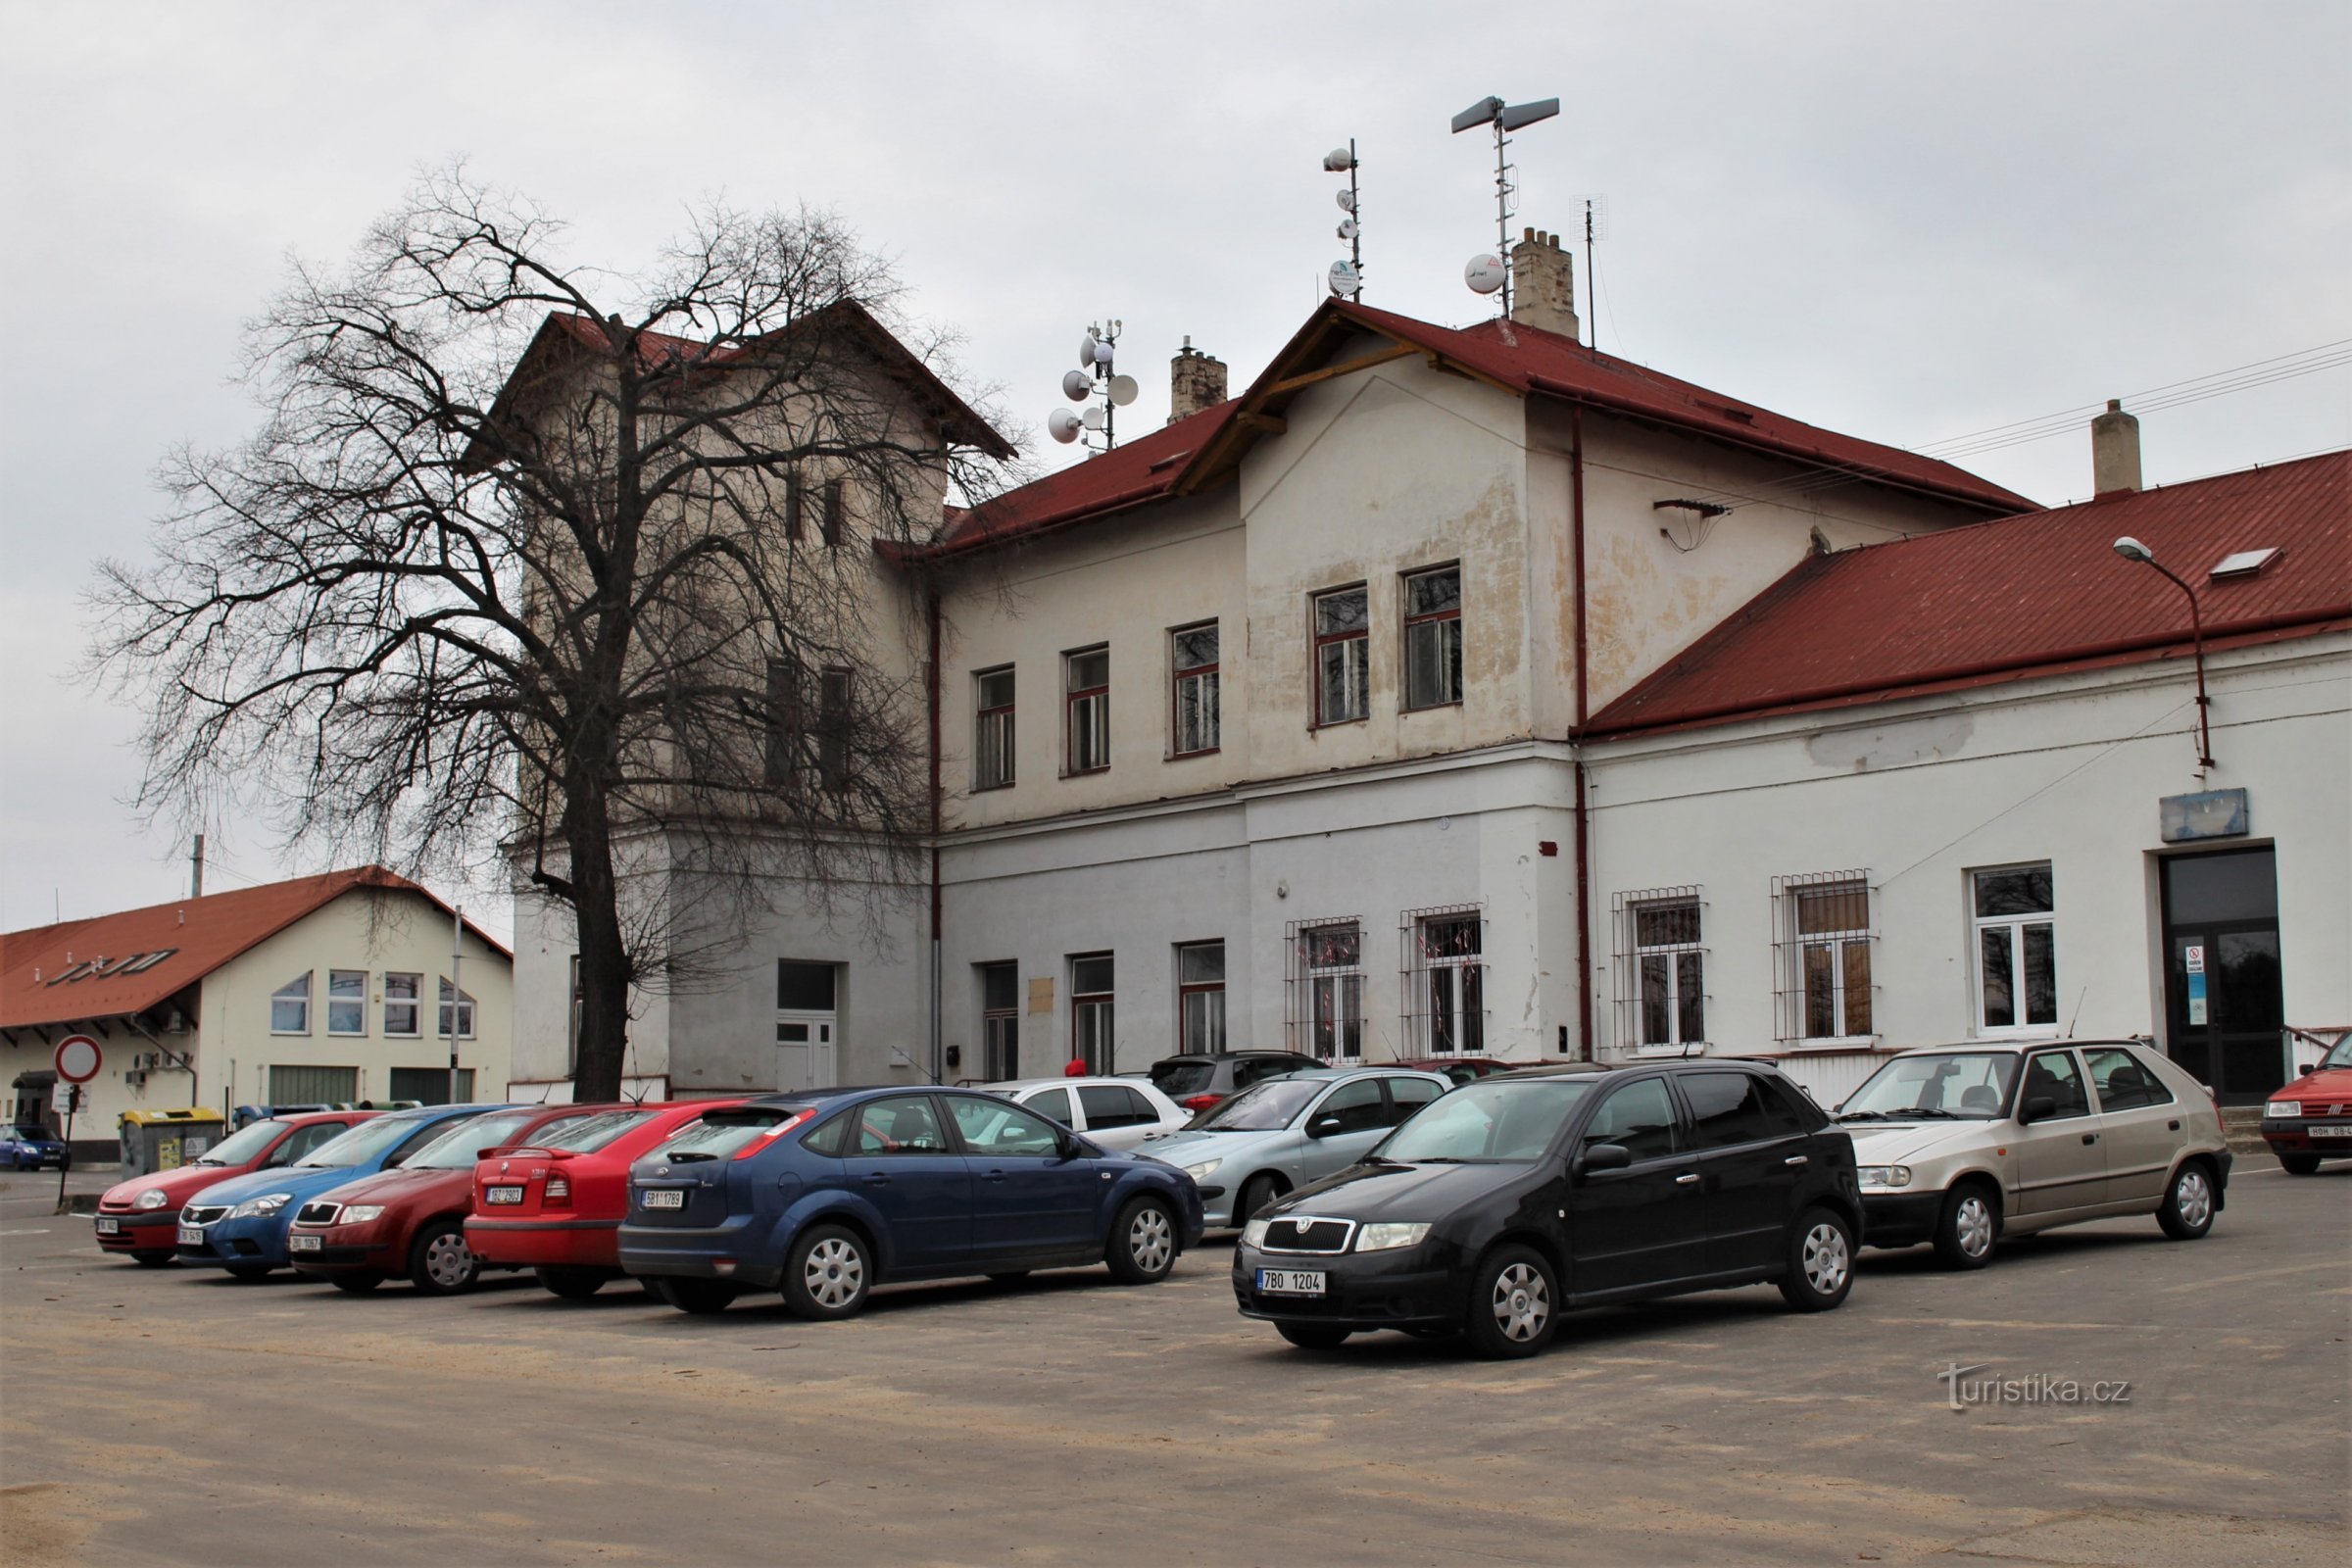 Перед зданием вокзала в Моравске Писек.